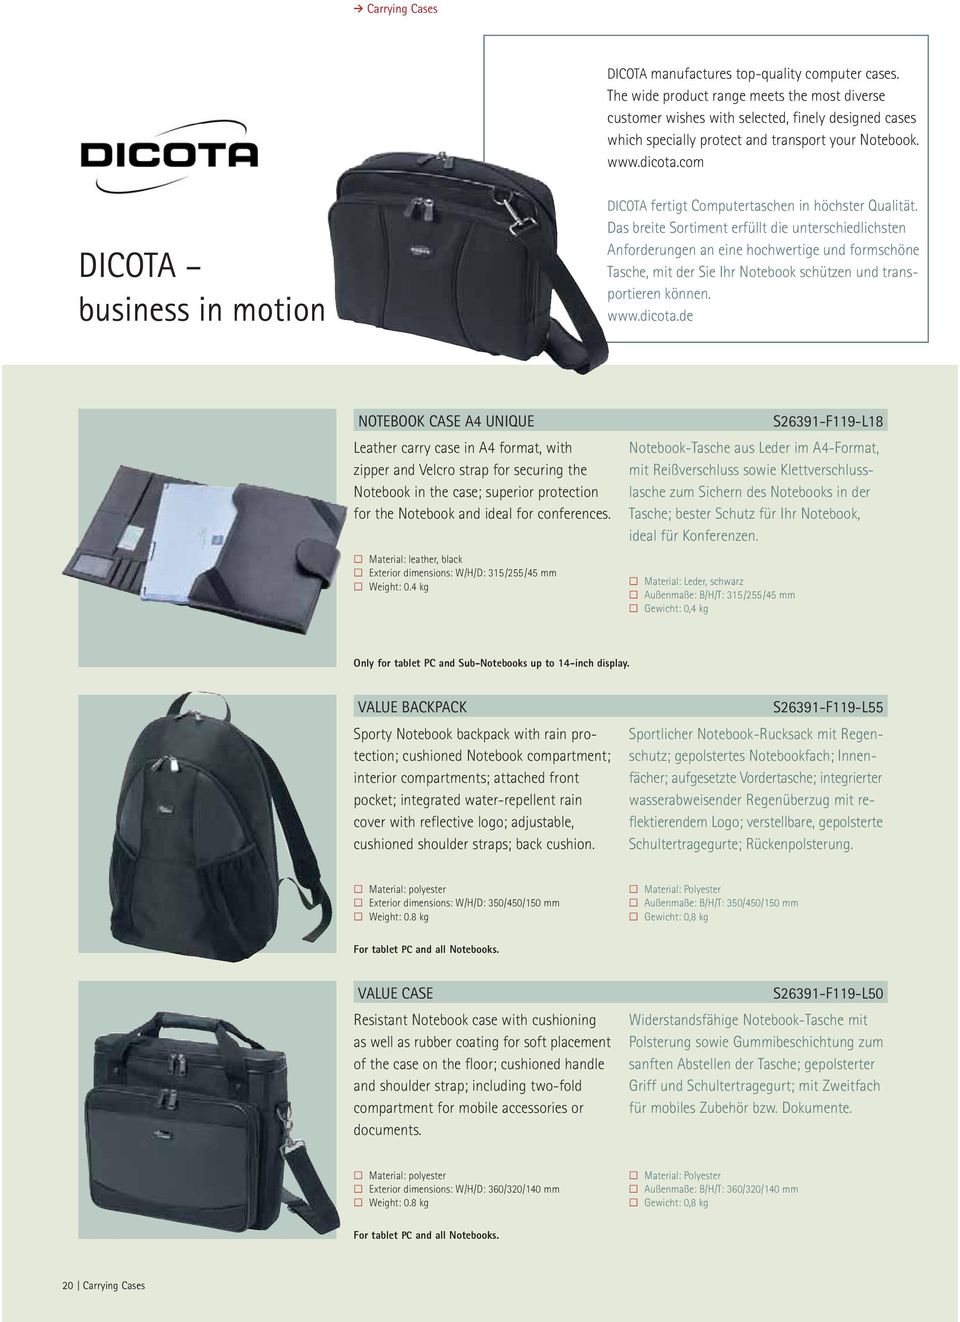 Das breite Sortiment erfüllt die unterschiedlichsten Anforderungen an eine hochwertige und formschöne Tasche, mit der Sie Ihr Notebook schützen und transportieren können. www.dicota.